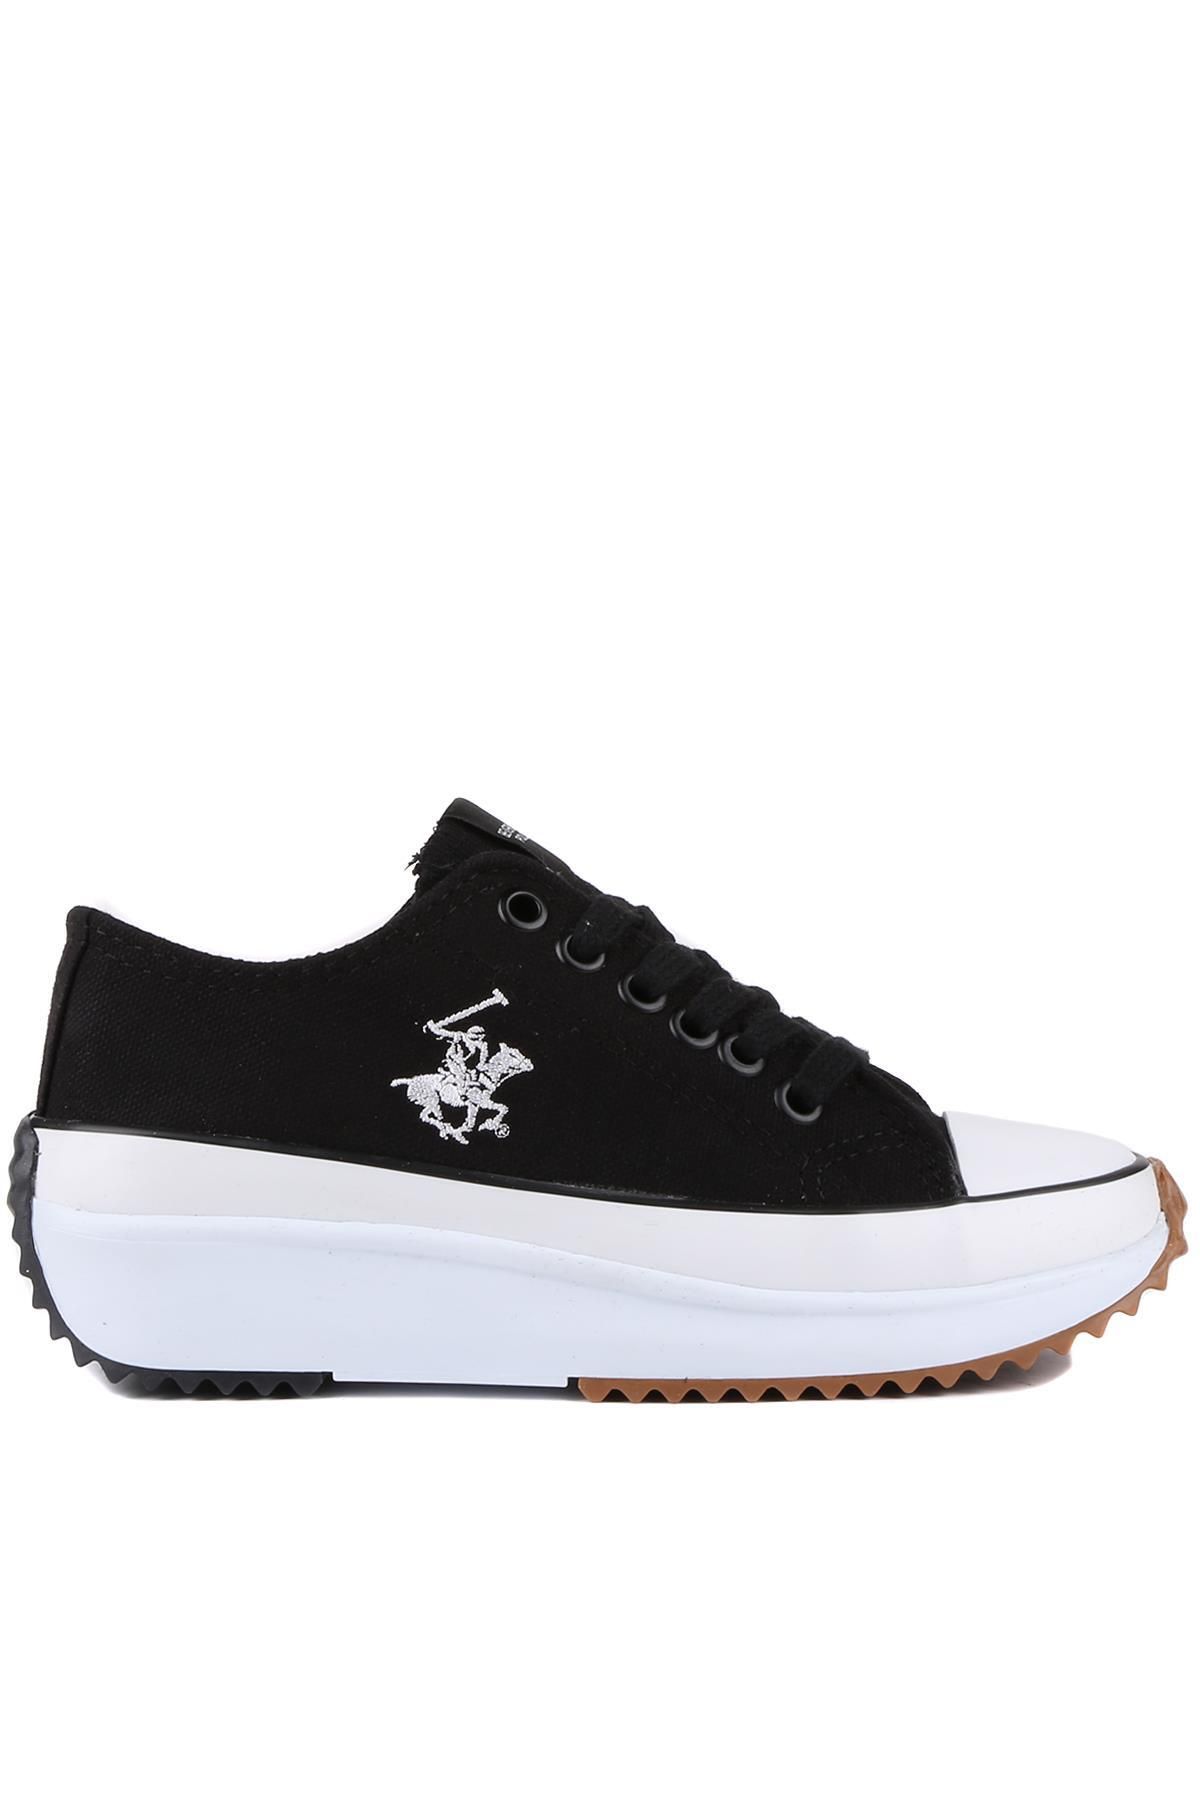 Beverly Hills Polo Club - Siyah Renk Kadın Sneaker Ayakkabı 750-po-30101